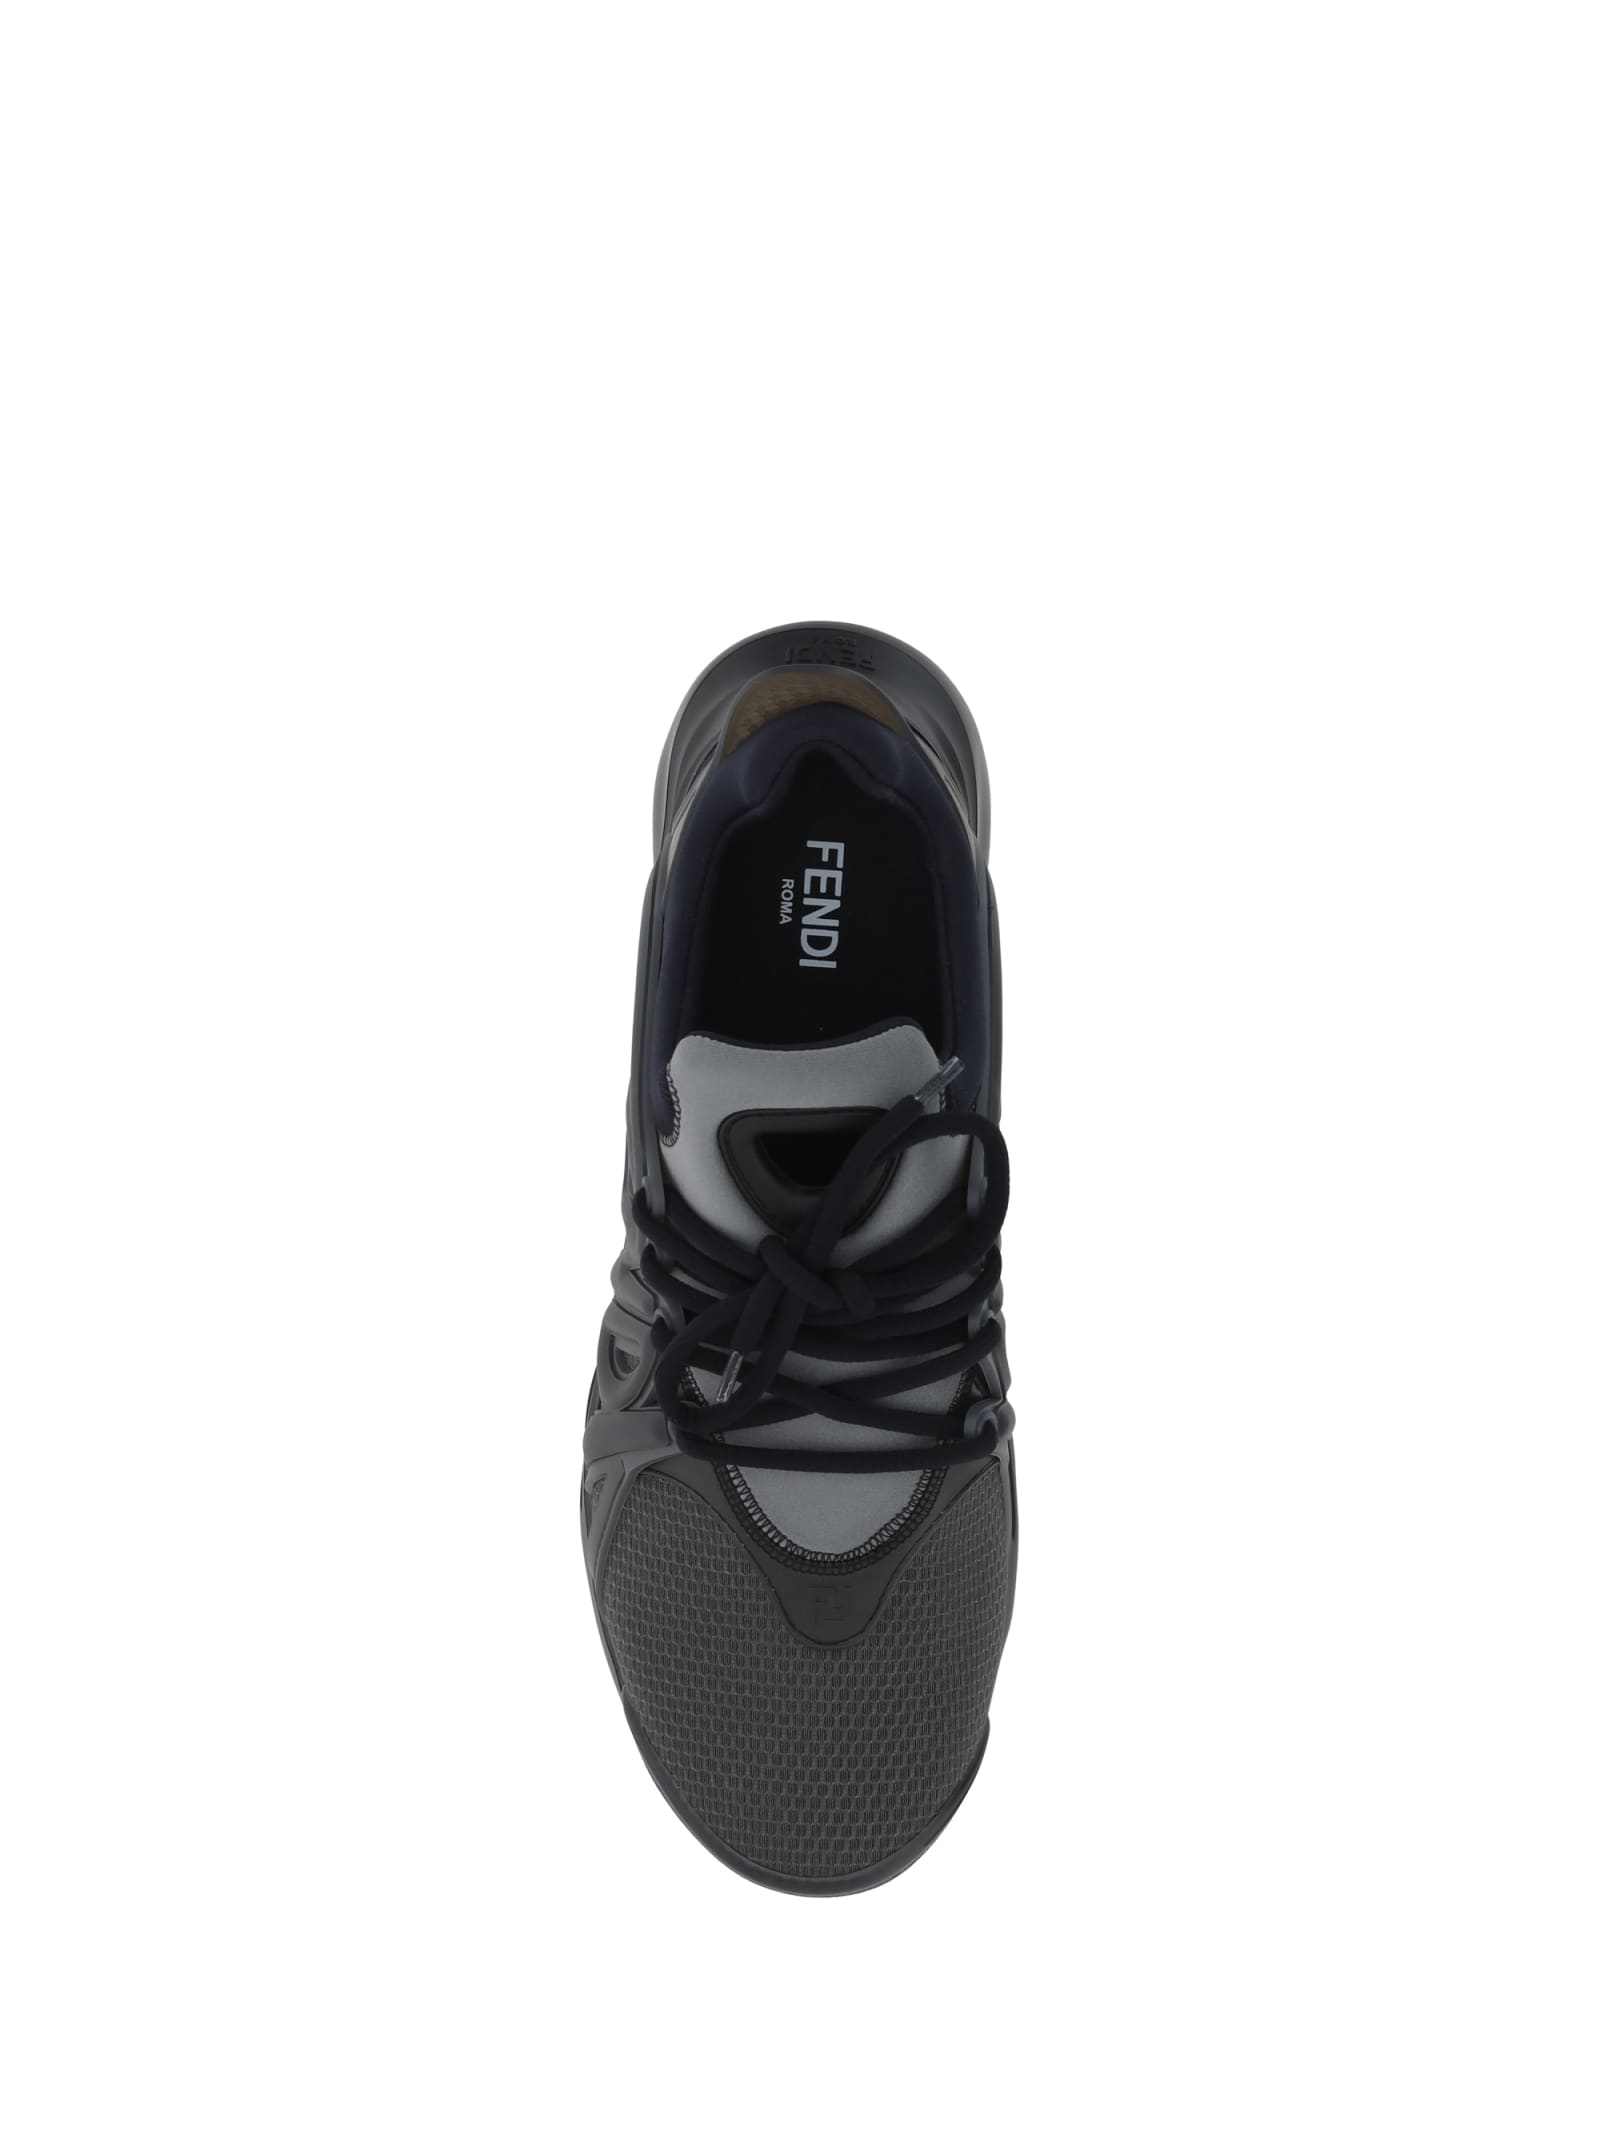 Shop Fendi Sneakers In Antr+grig+argill Ner